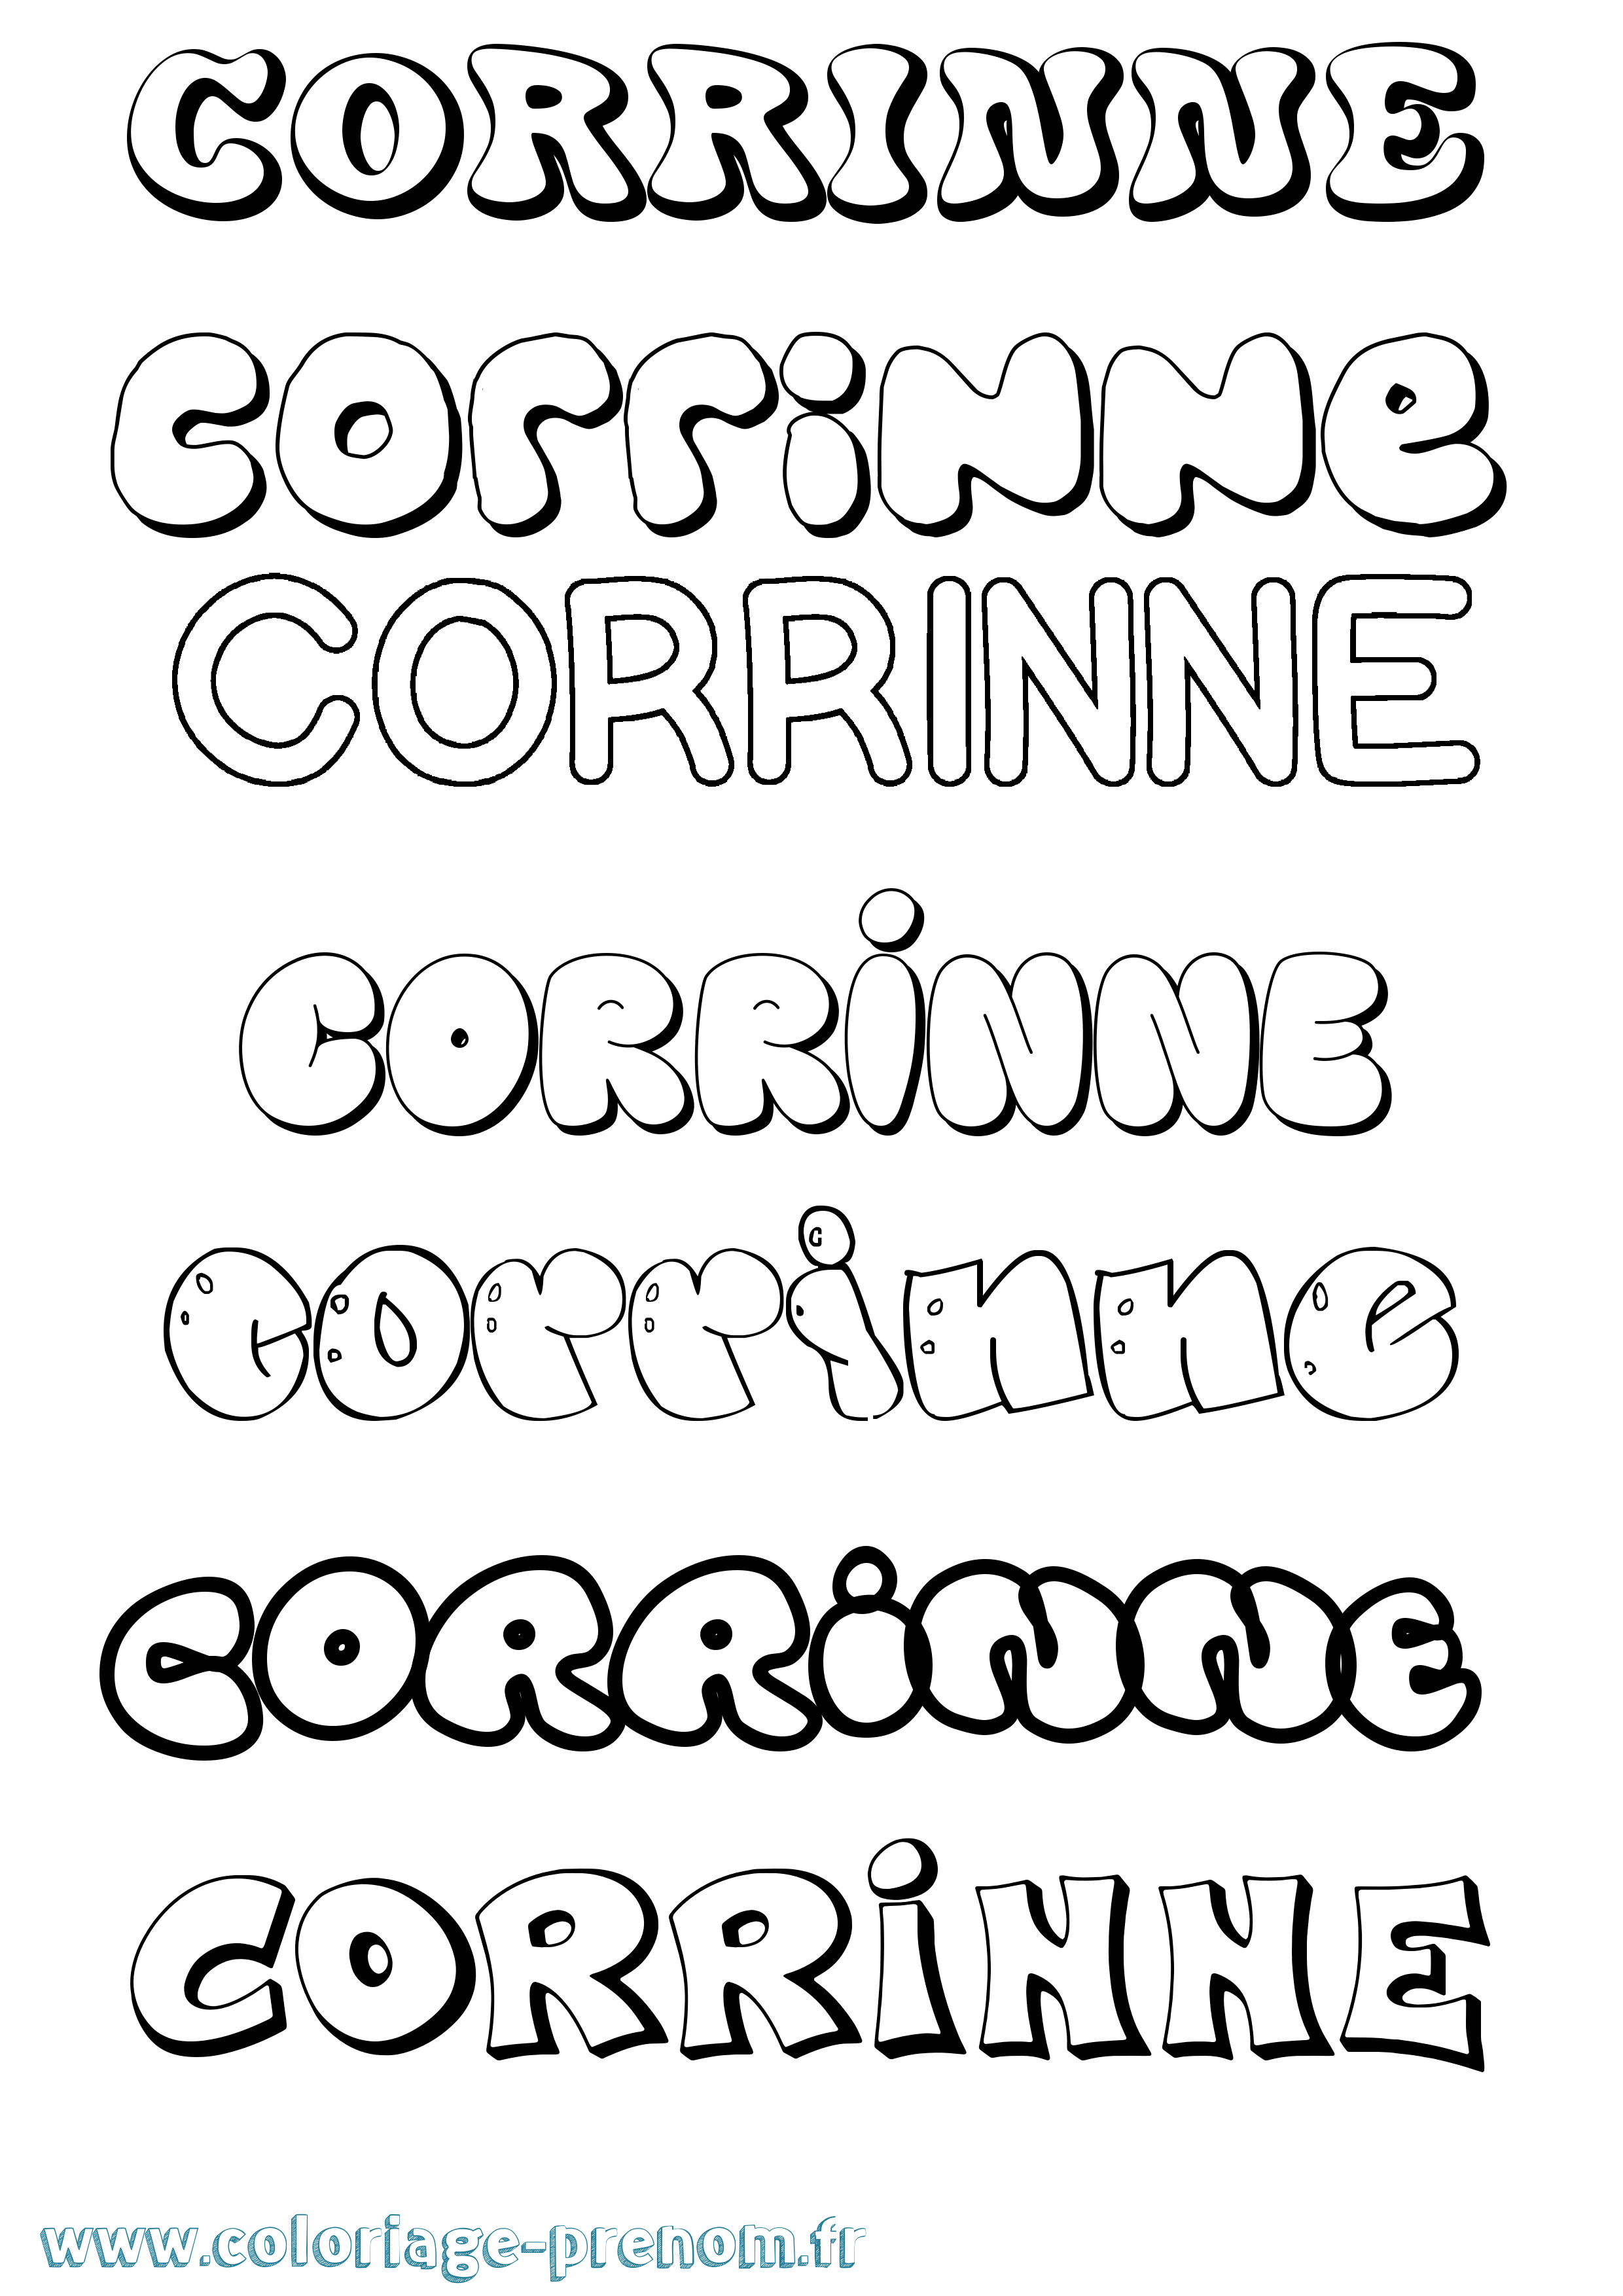 Coloriage prénom Corrinne Bubble